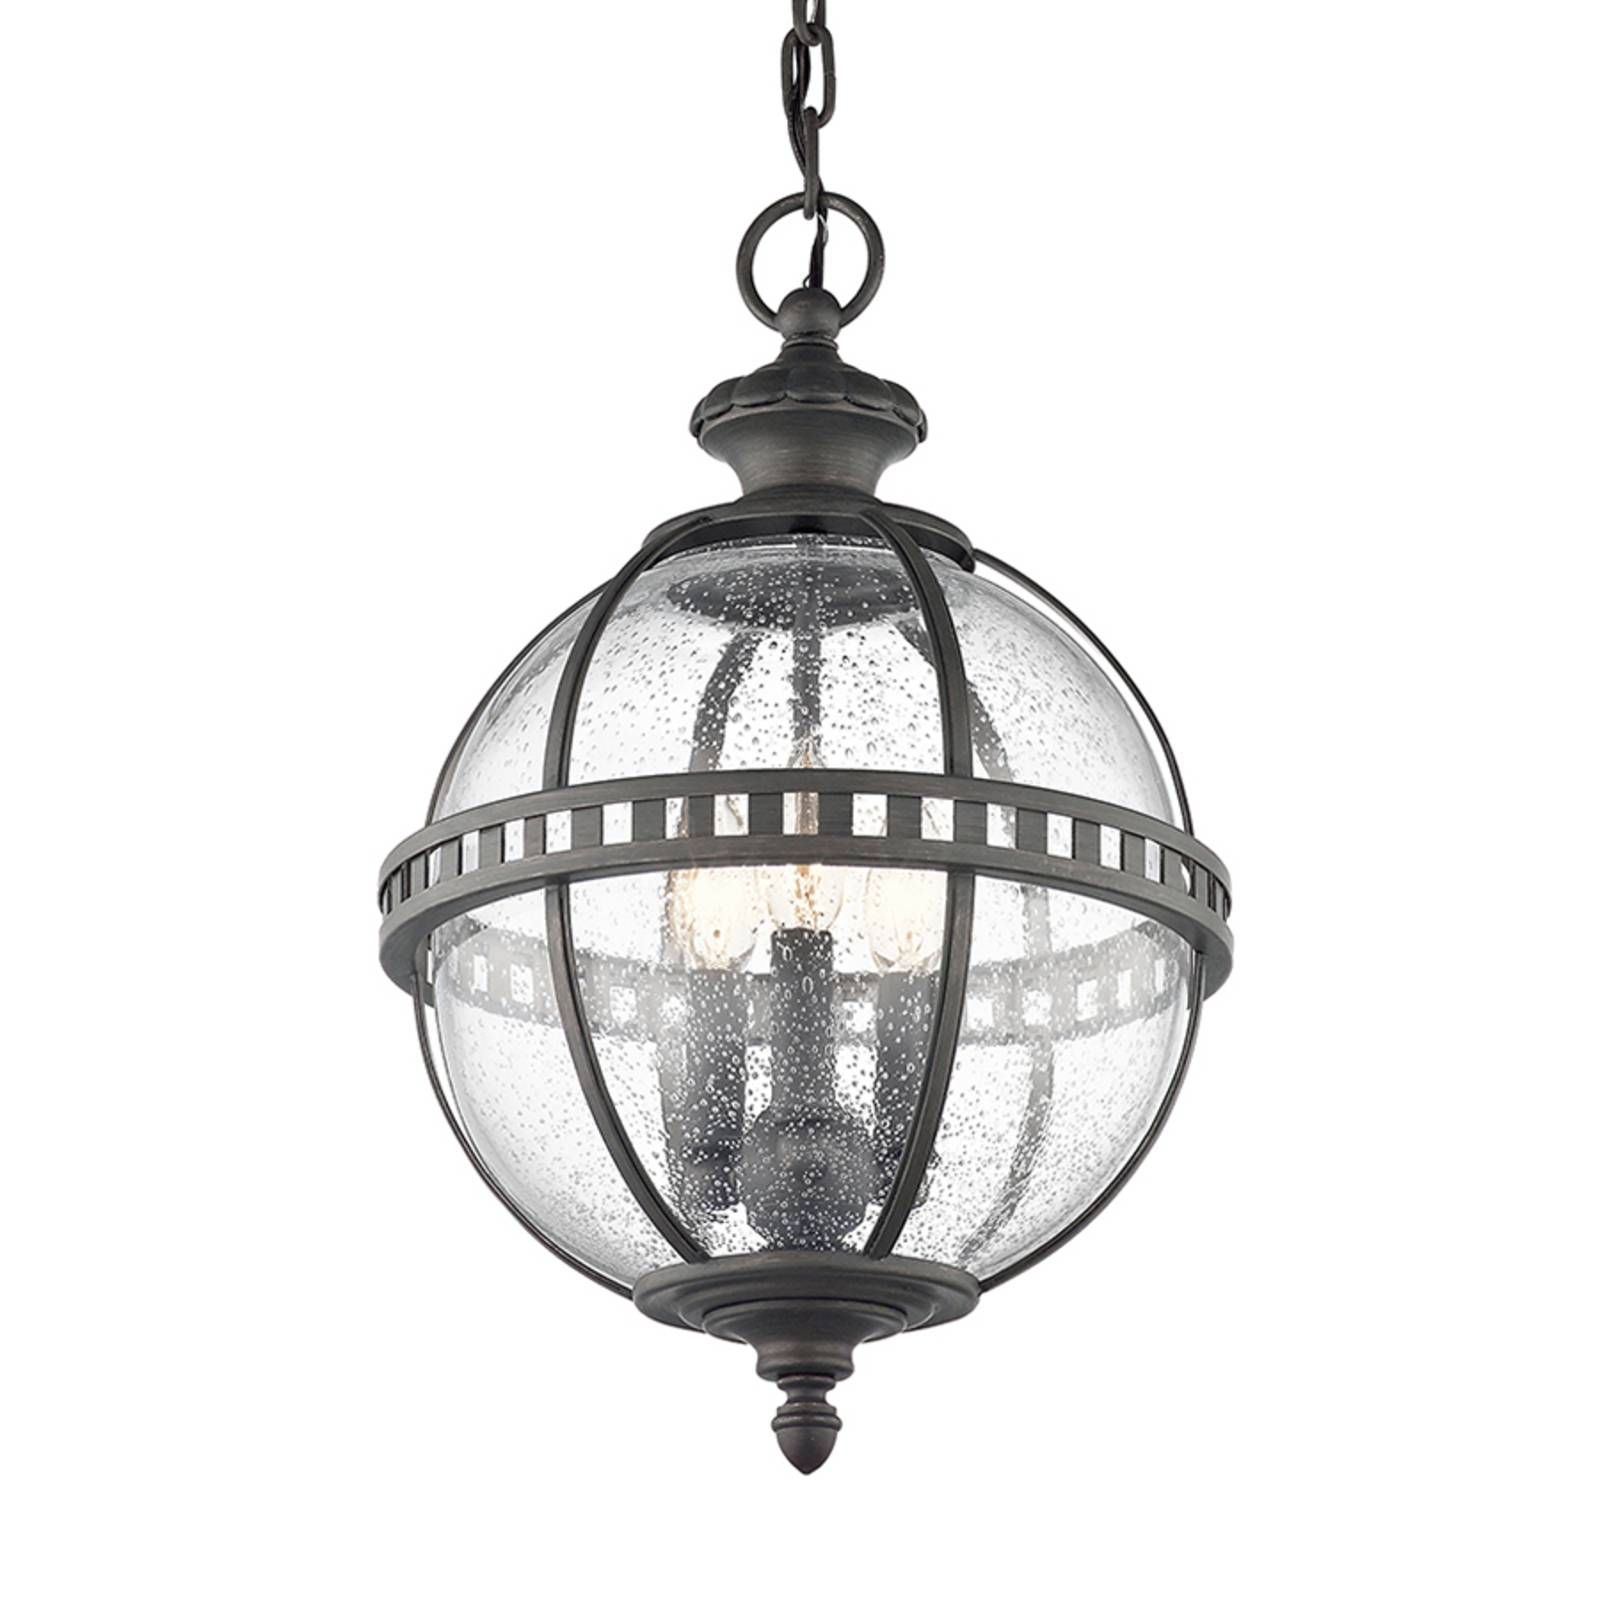 KICHLER Vonkajšia závesná lampa Halleron viktoriánsky štýl, hliník, sklo, E14, 60W, K: 47.6cm